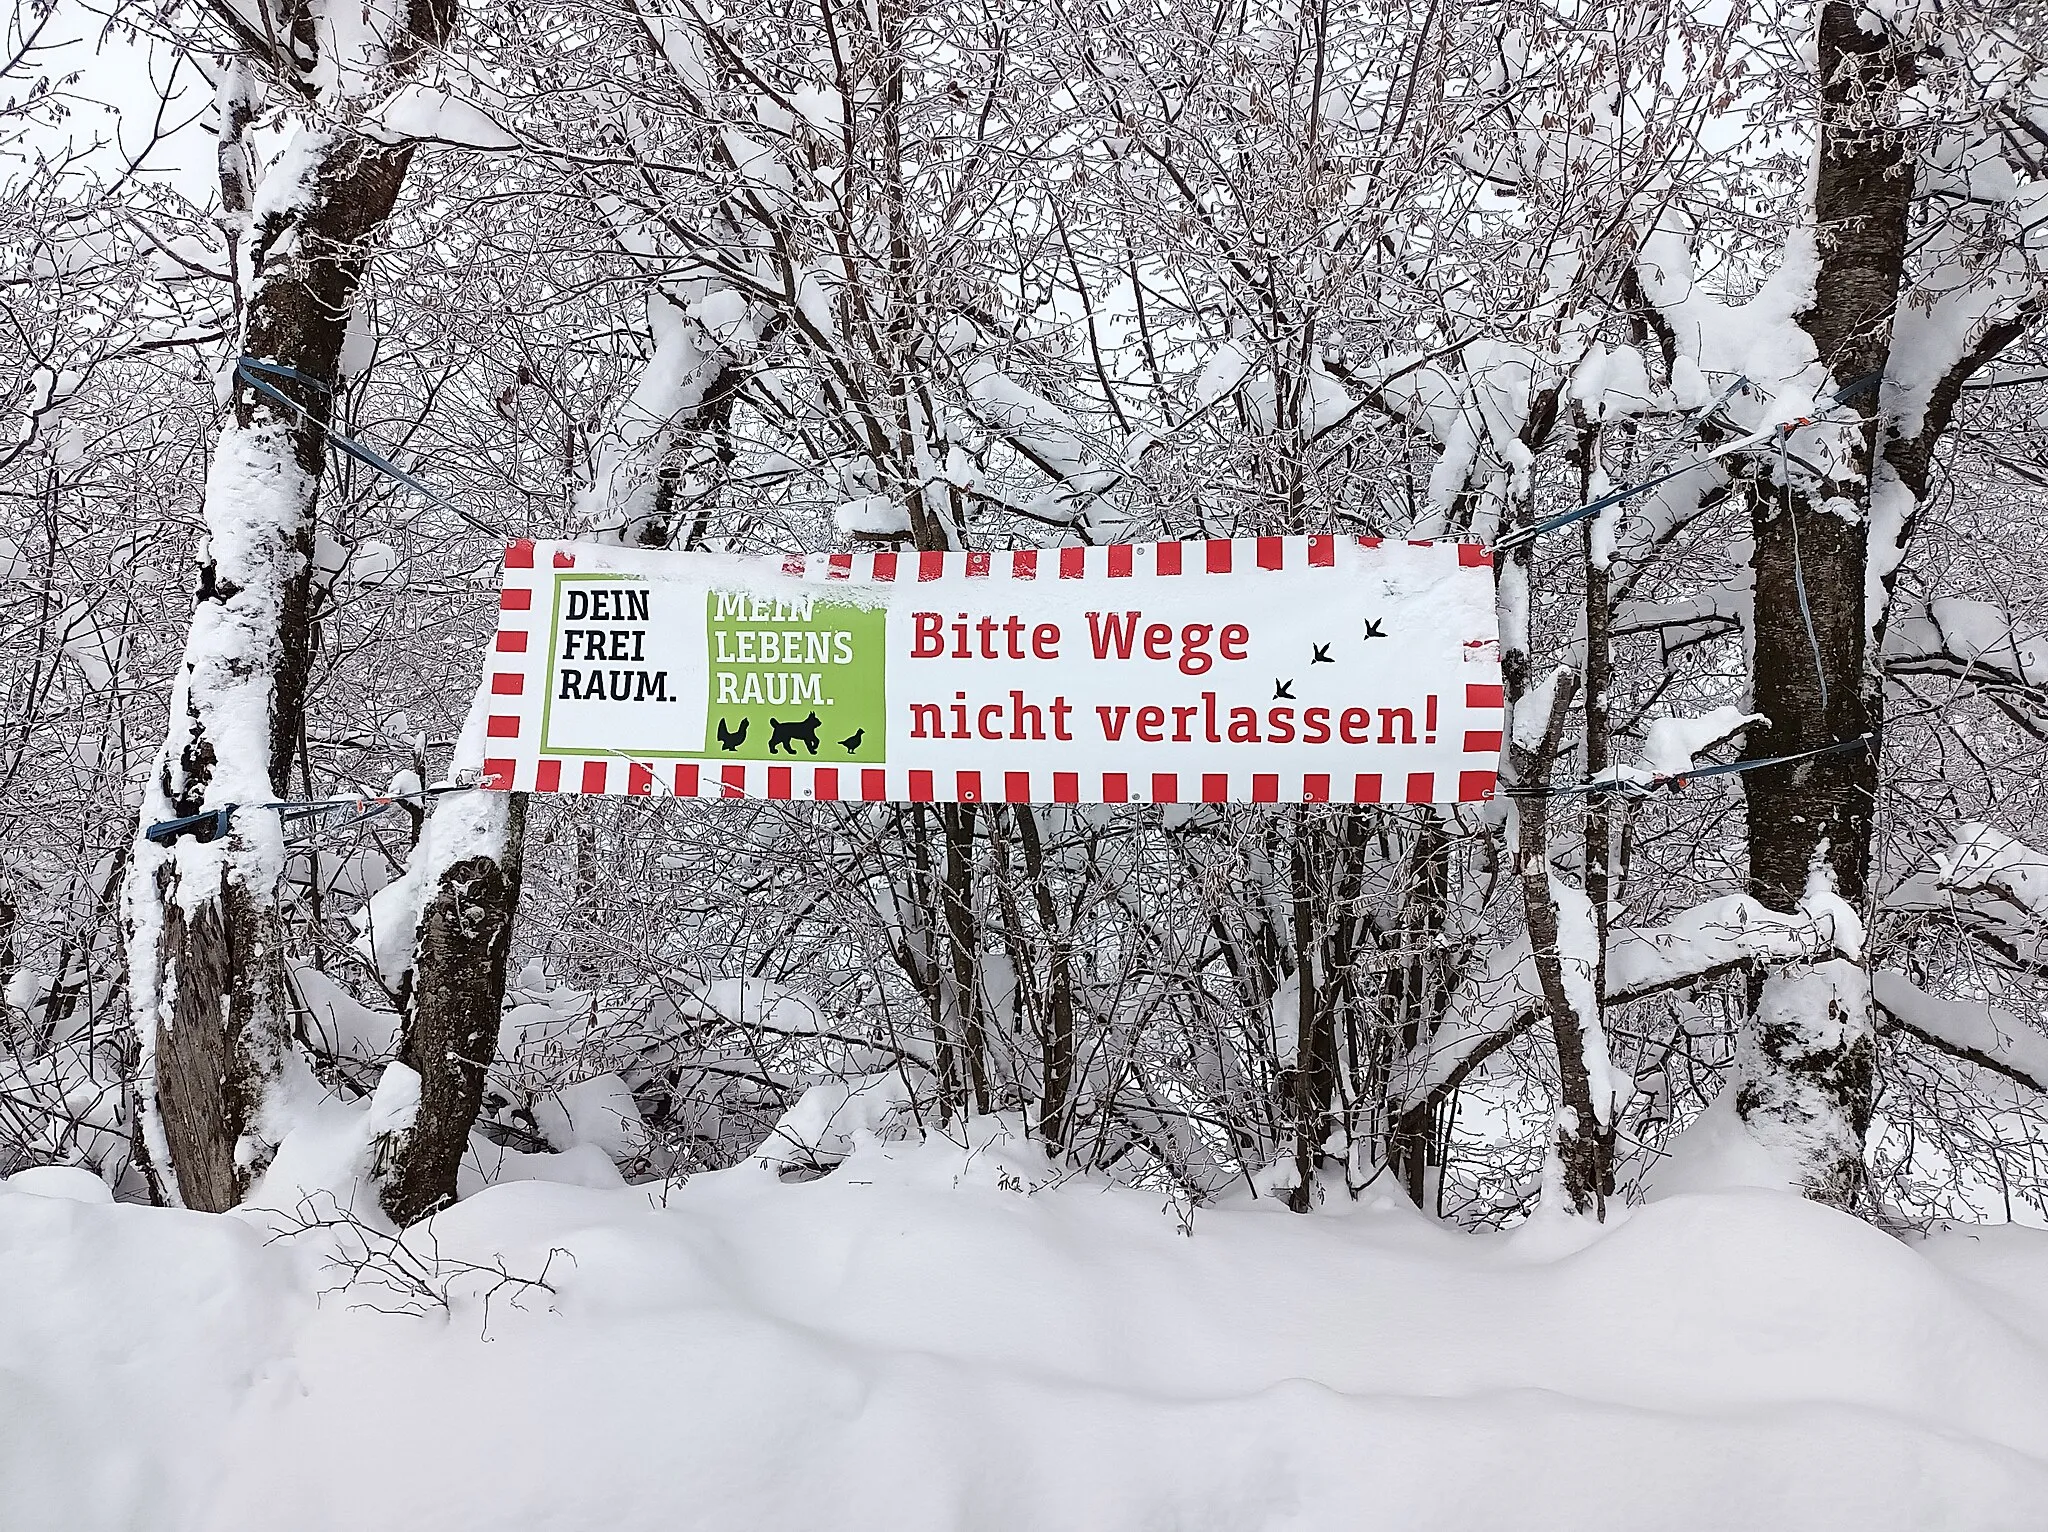 Photo showing: Banner bei Rohrmünz am Wanderparkplatz.
Aufschrift:
DEIN FREI RAUM.
MEIN LEBENS RAUM.

Bitte Wege nicht verlassen!